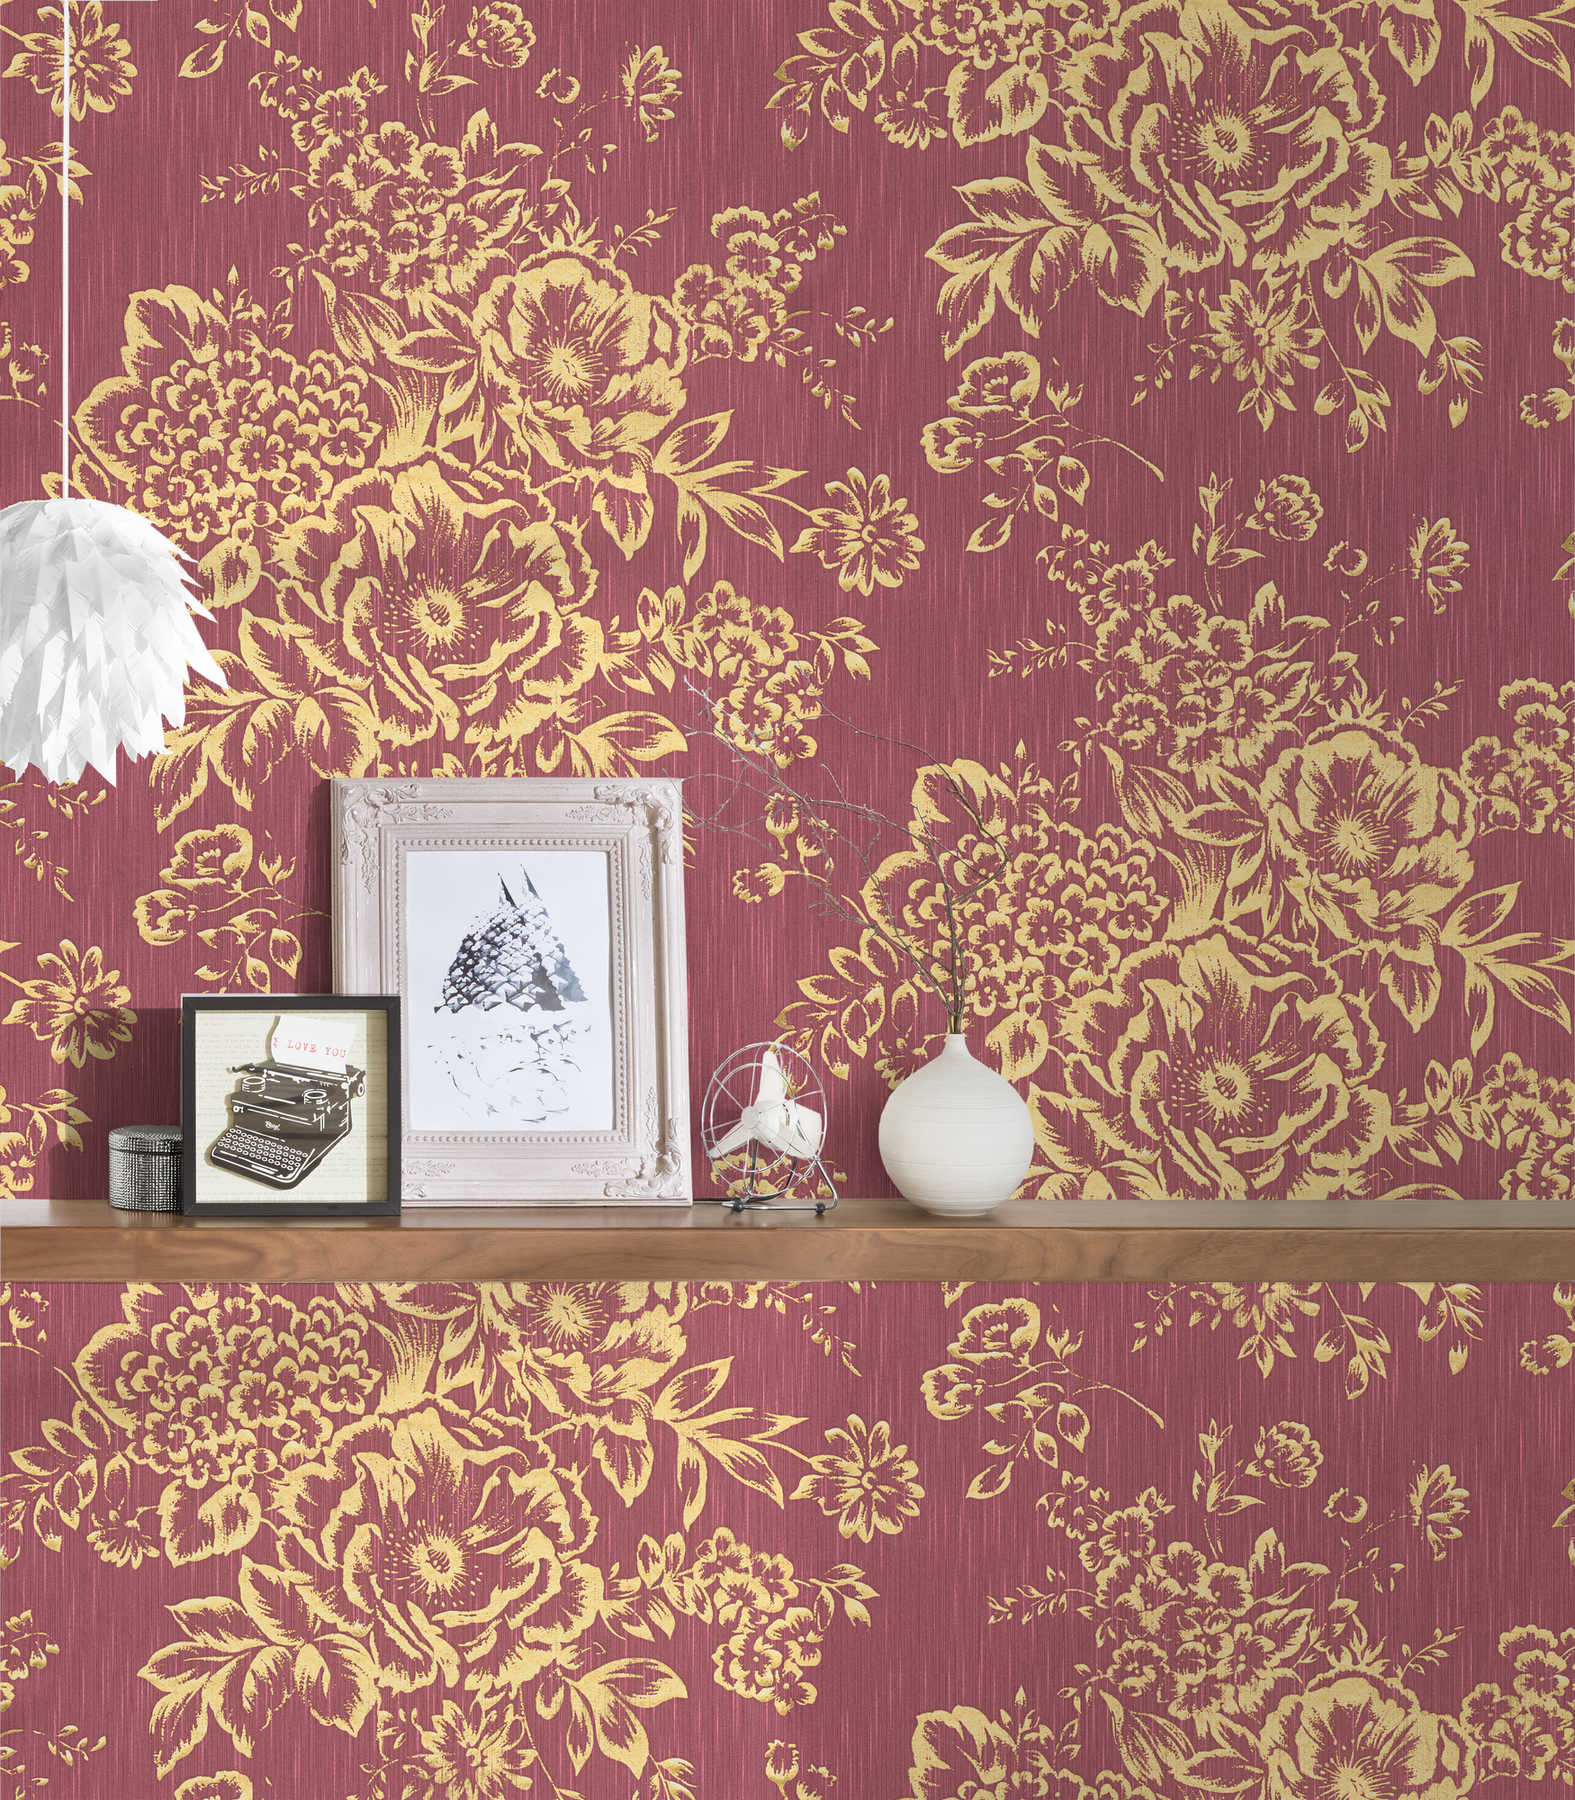             Textuurbehang met gouden bloemenpatroon - goud, rood
        